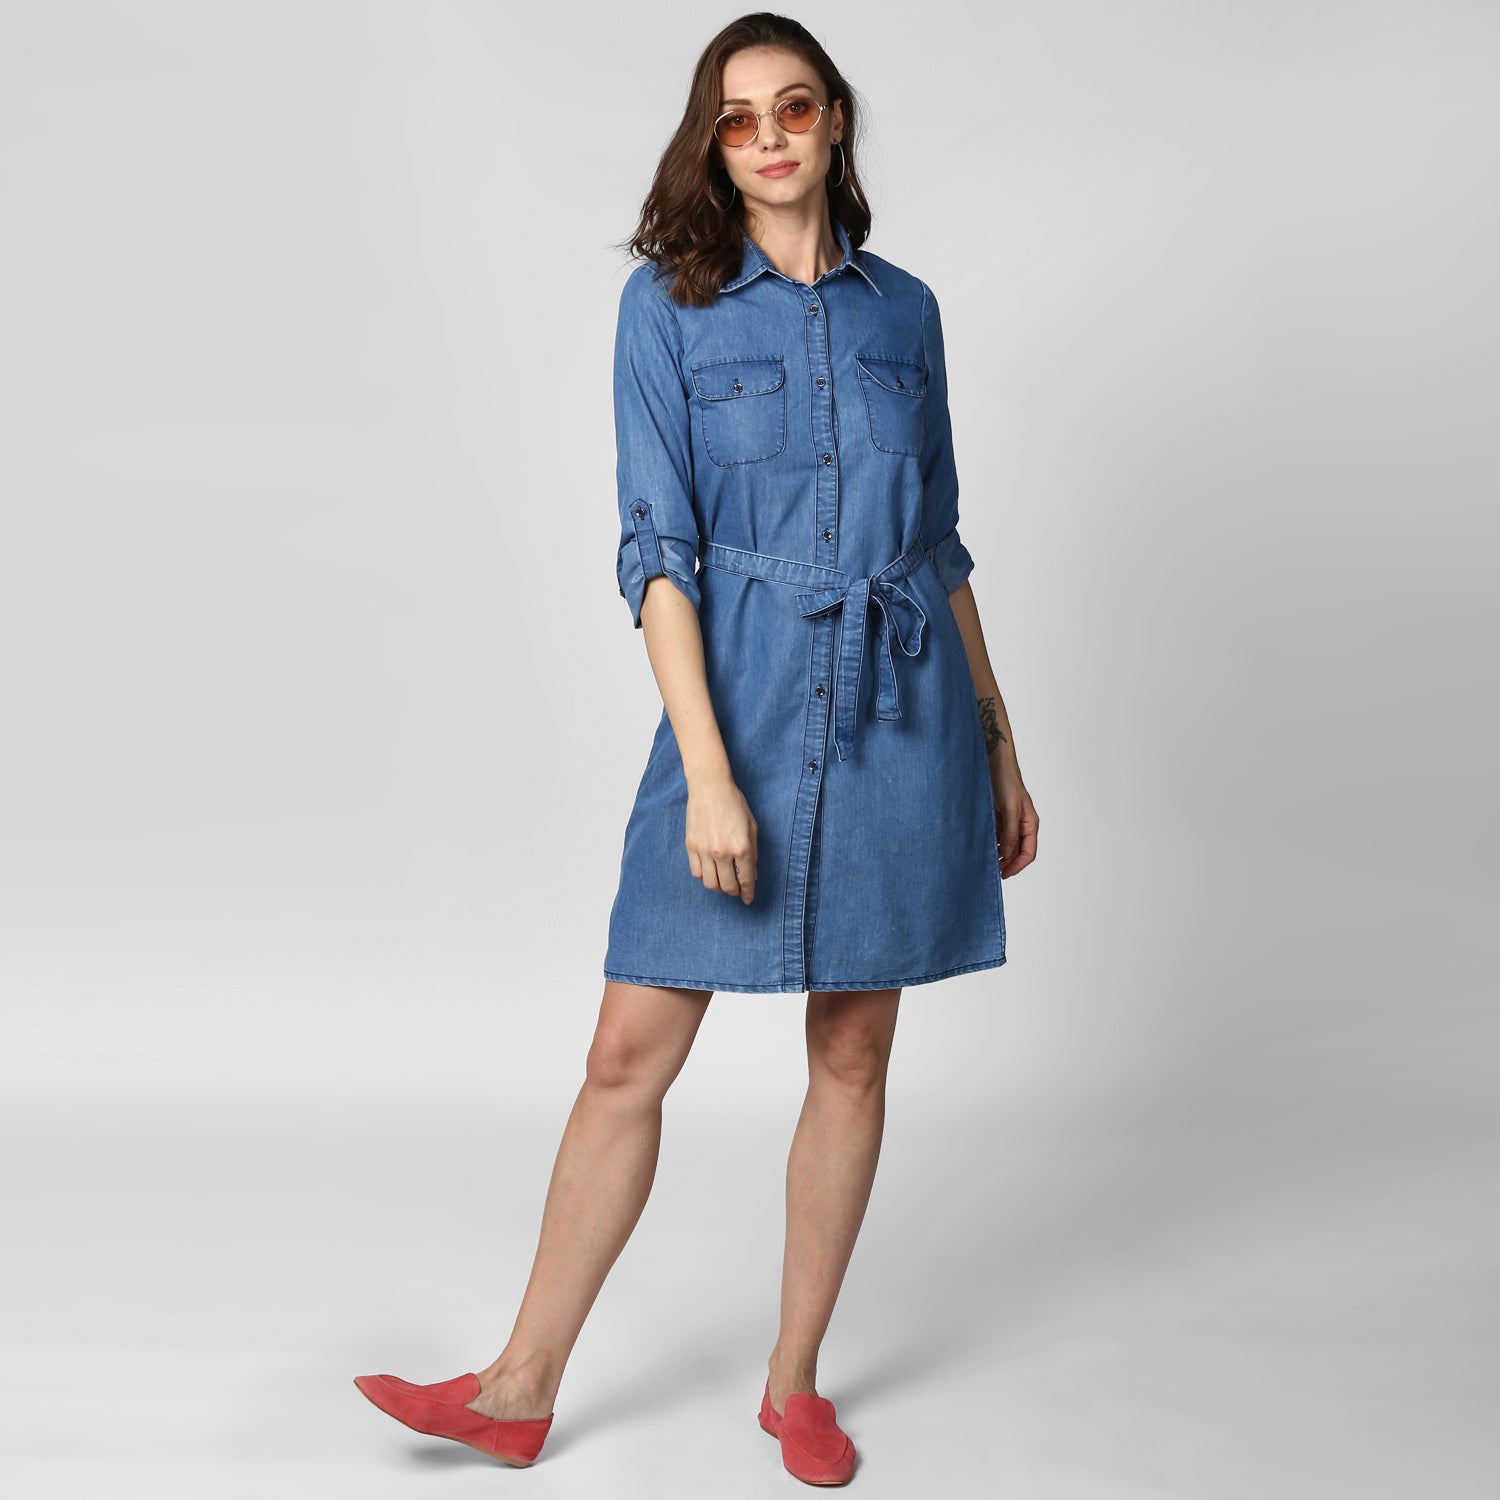 Women's Blue Denim Double Pocket Double Flap Dress - StyleStone